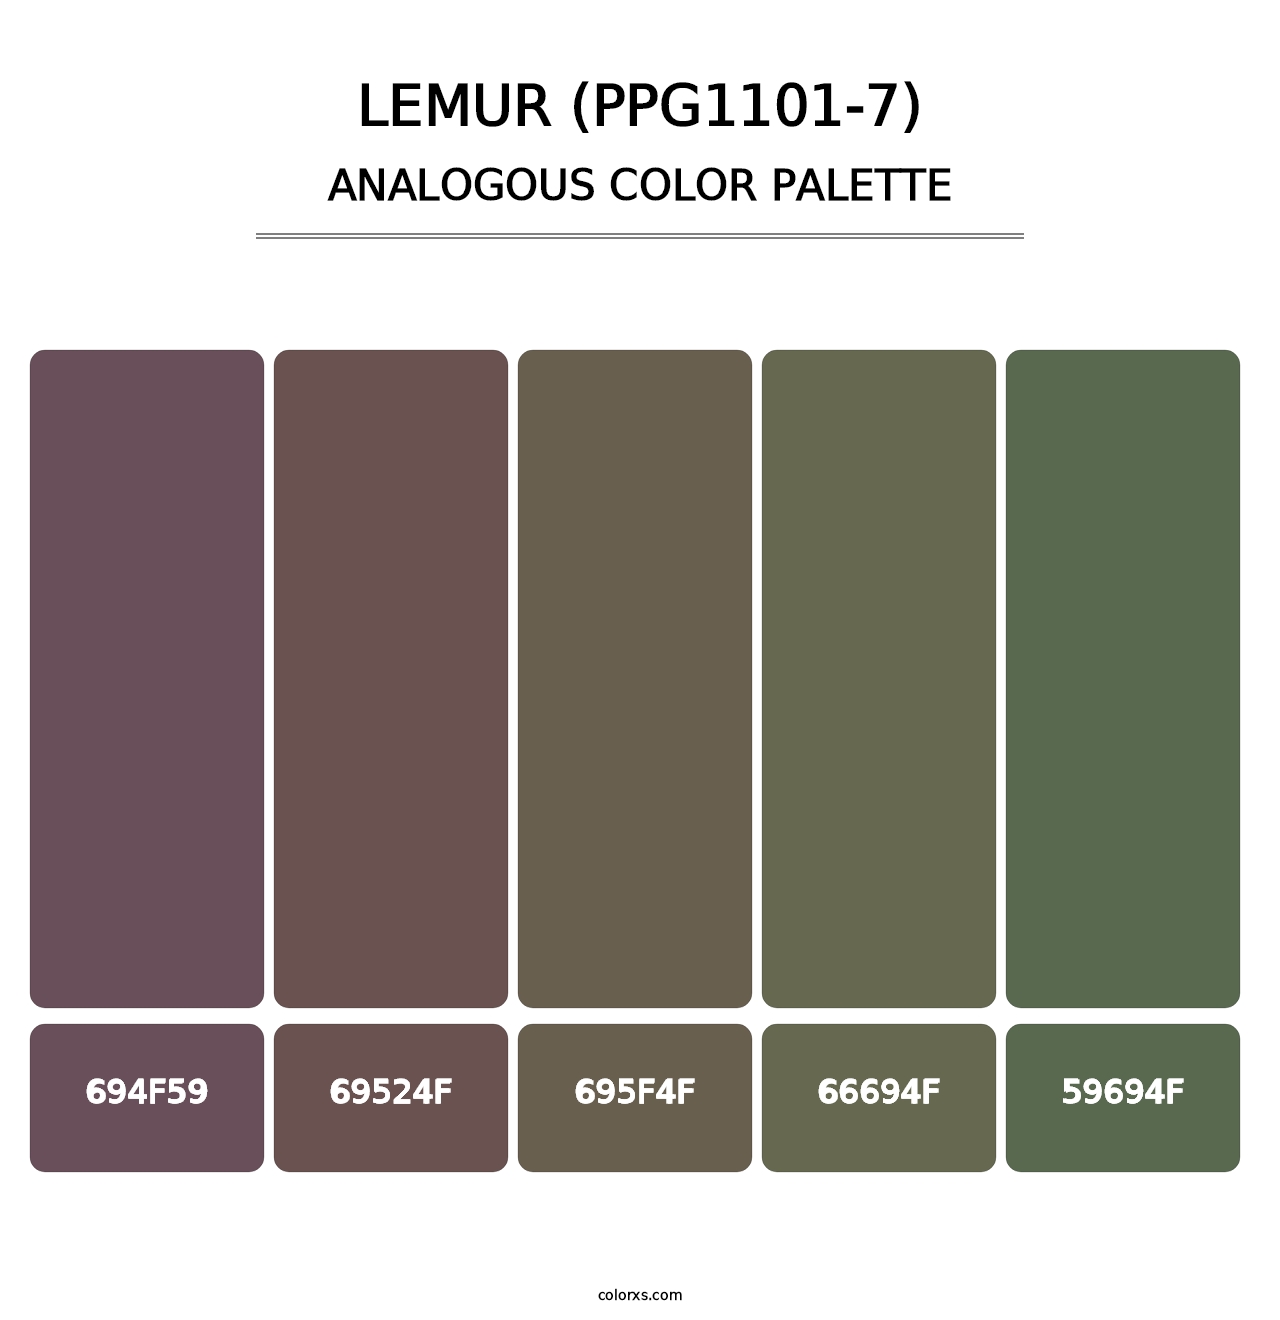 Lemur (PPG1101-7) - Analogous Color Palette